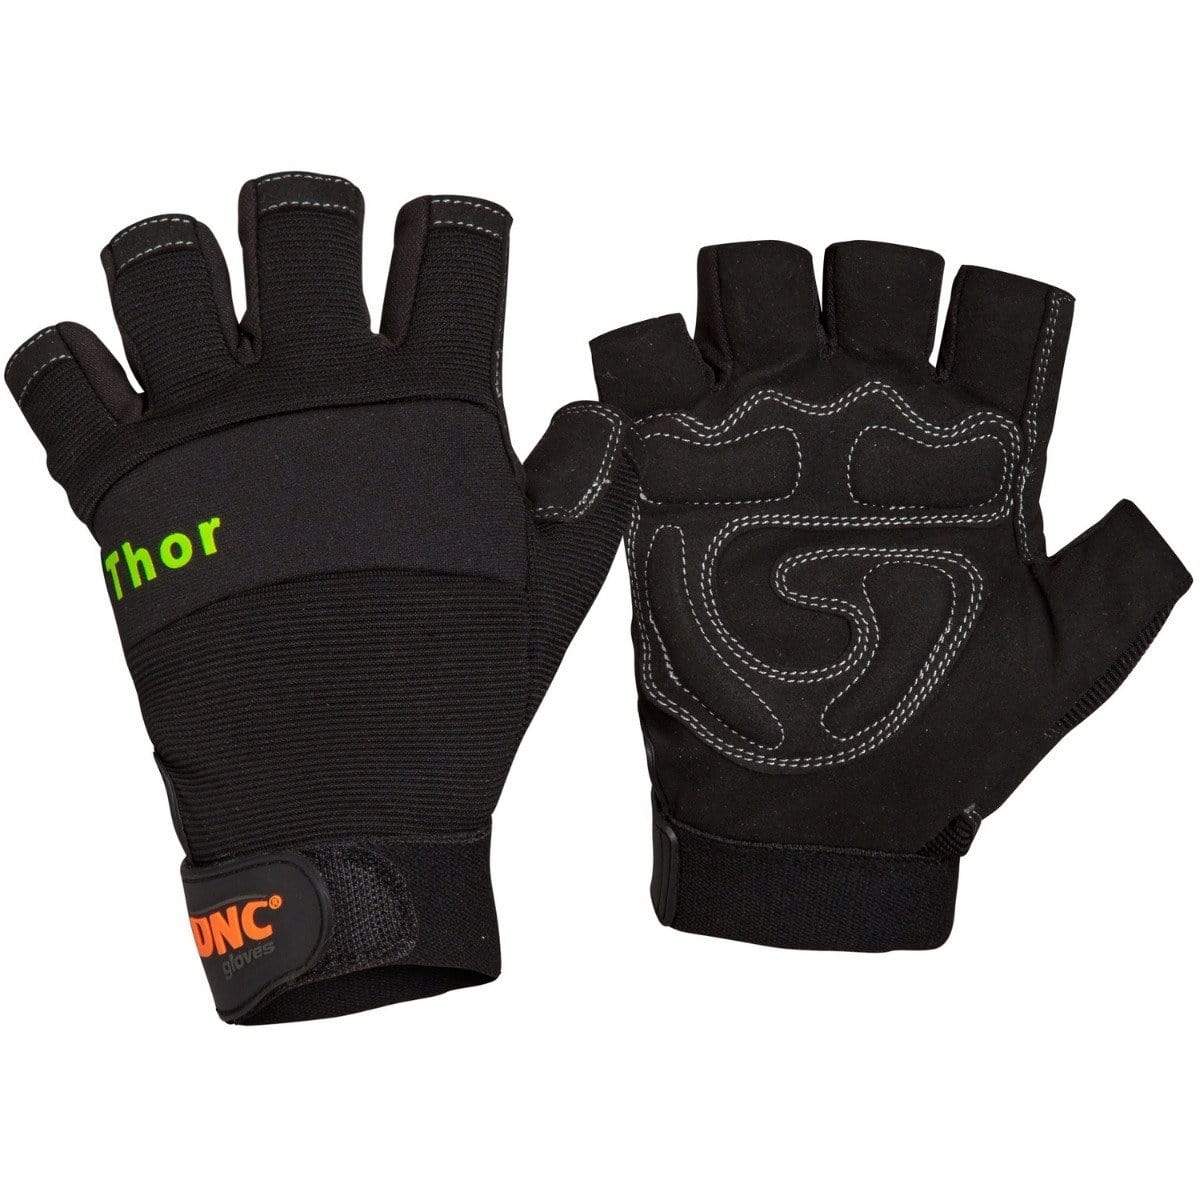 Dnc Workwear Thor - GM09 PPE DNC Workwear Black/Black 2XL/11 